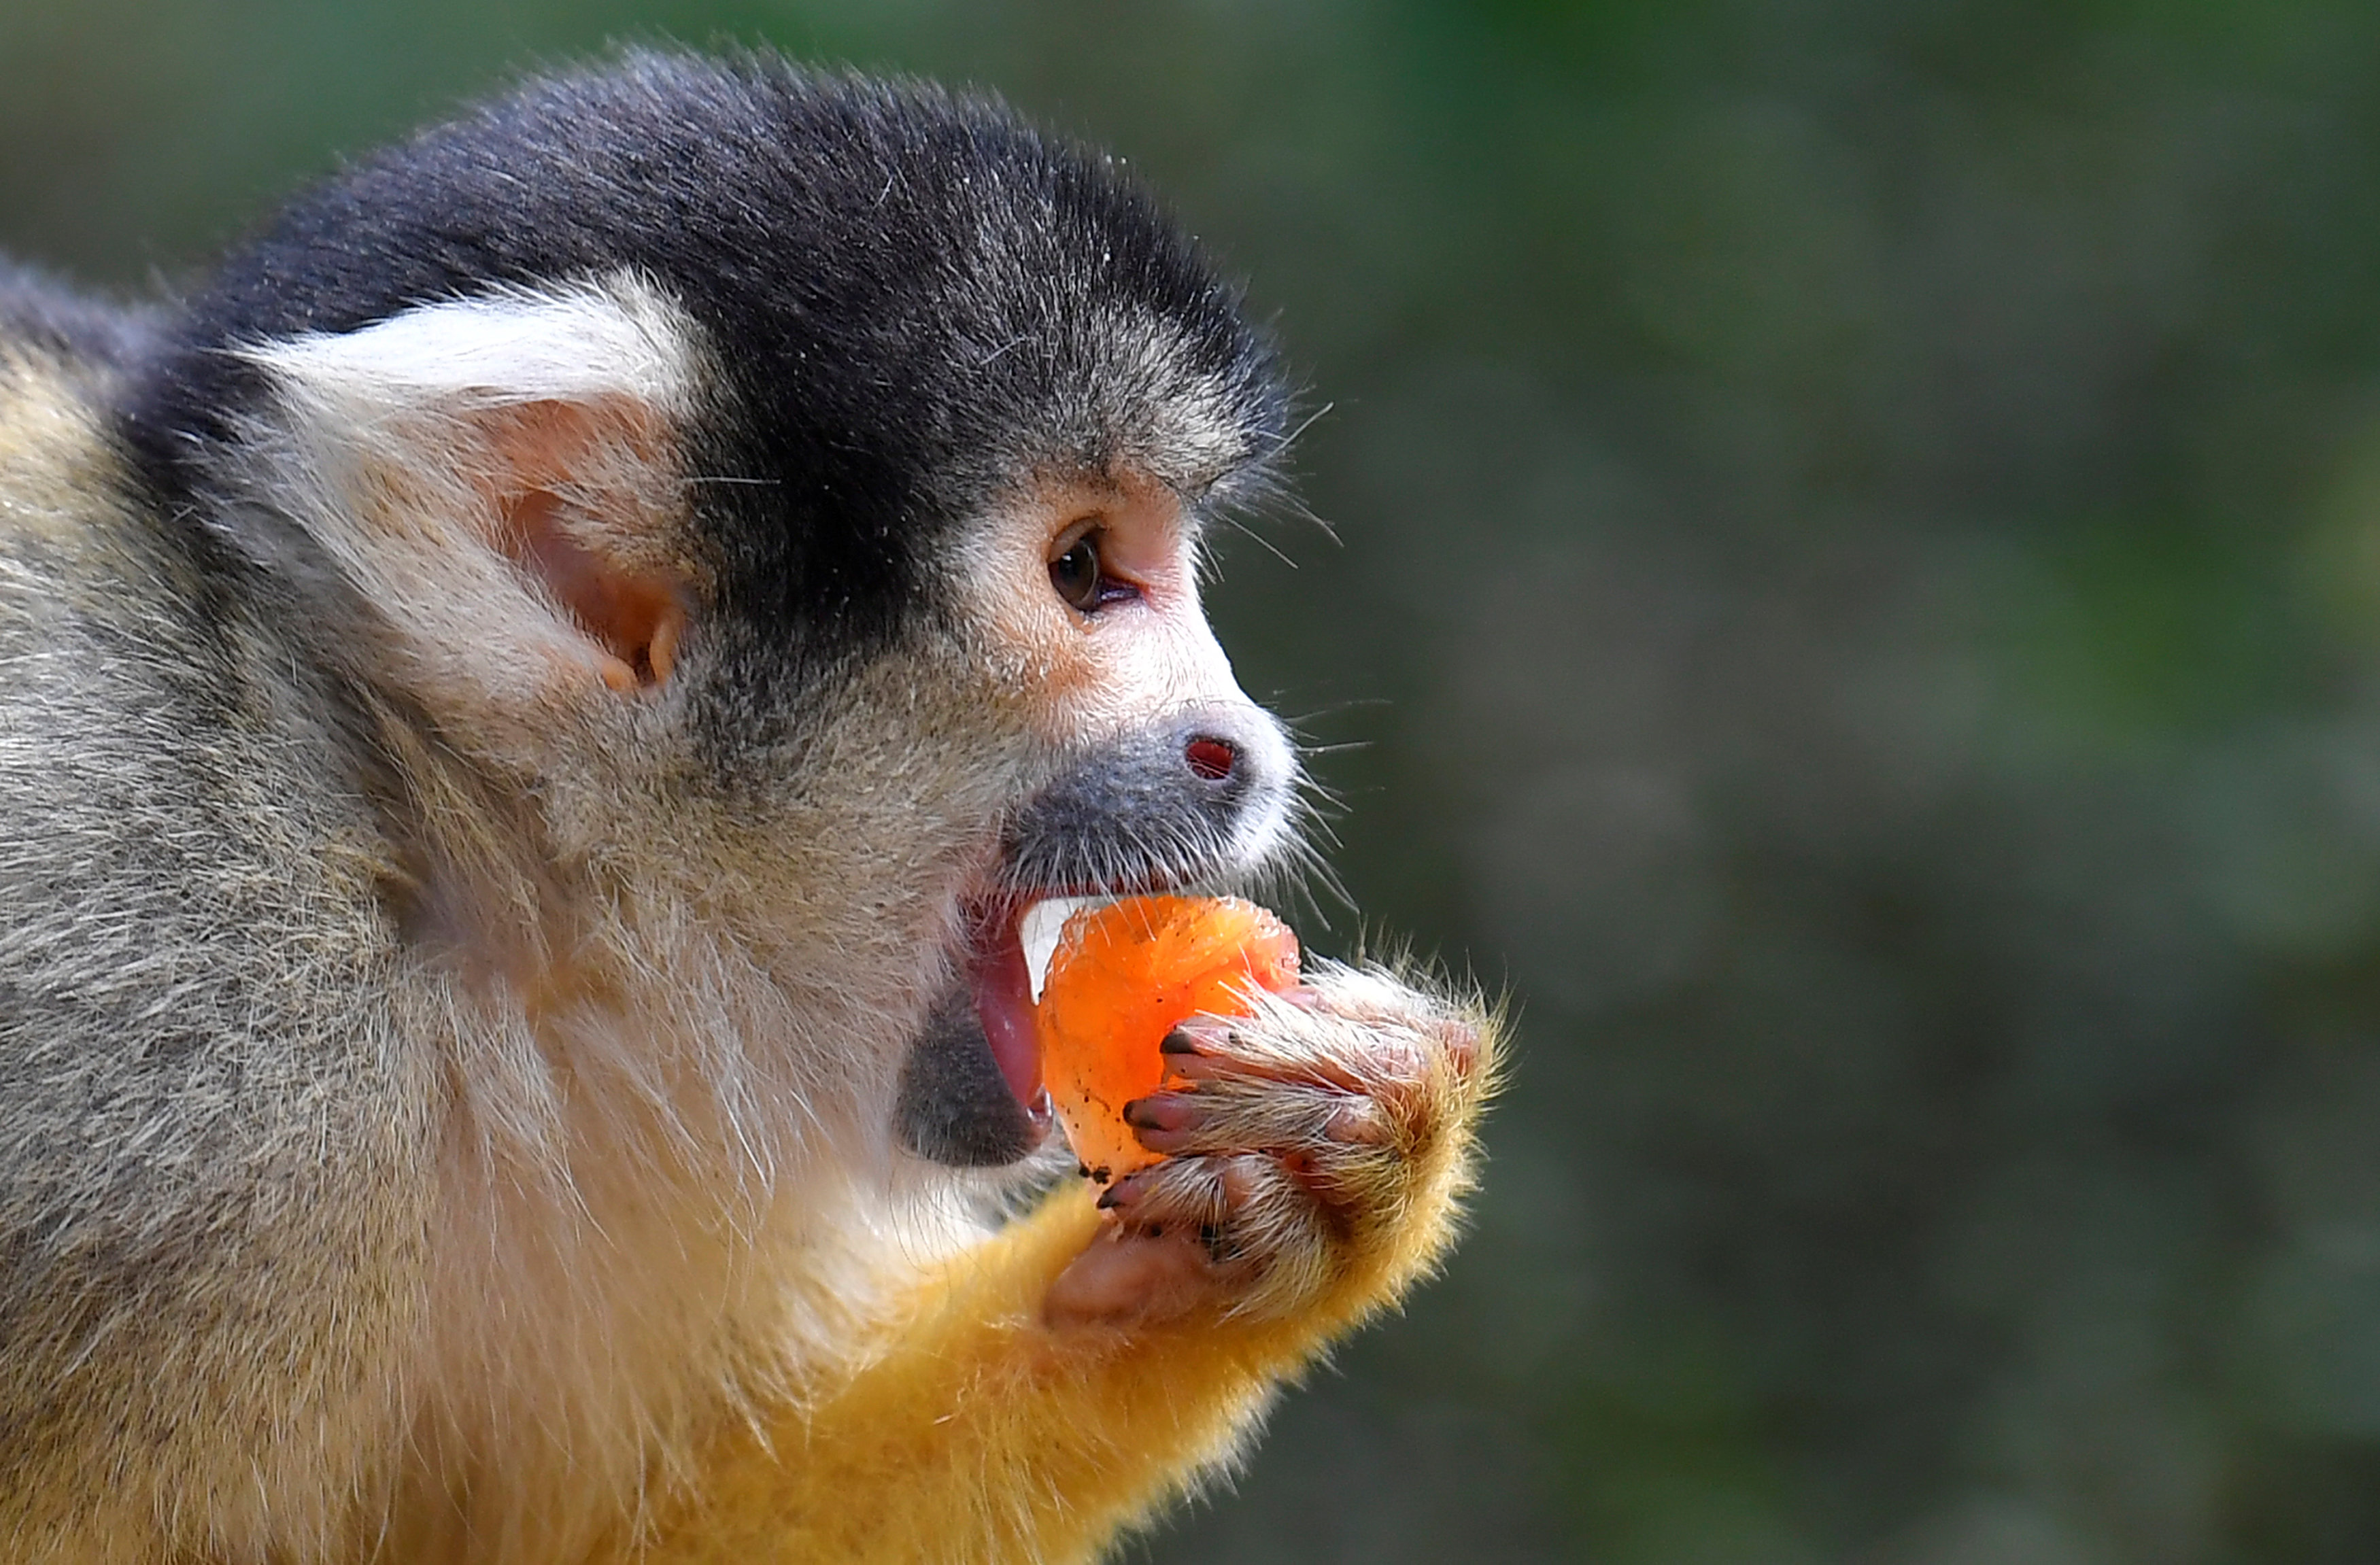 أحد القرود يتناول توت مثلج